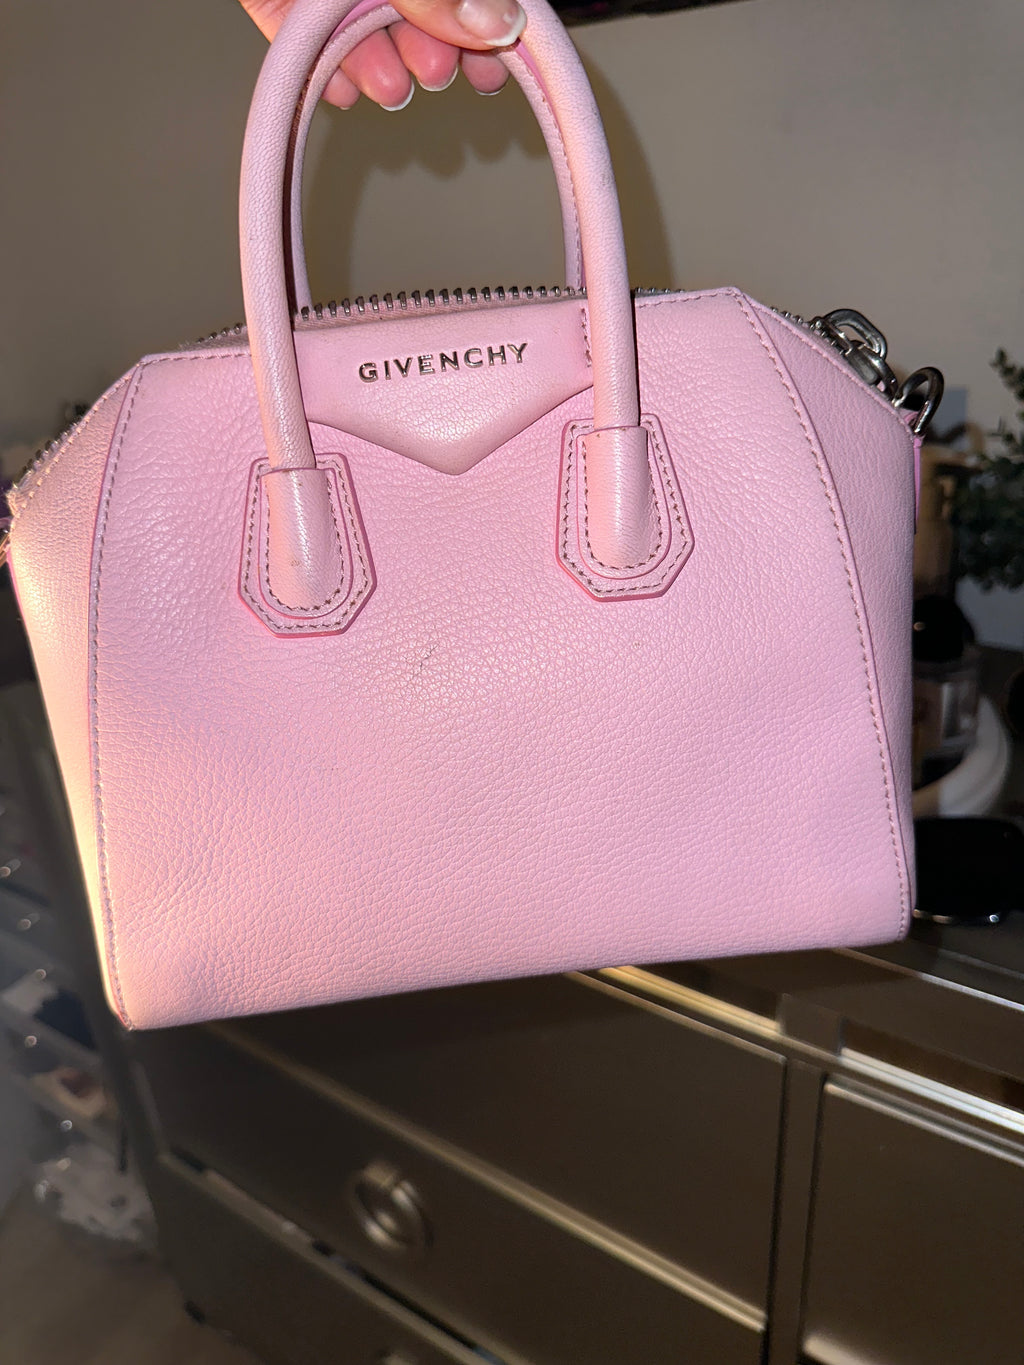 Givenchy Antigona bag